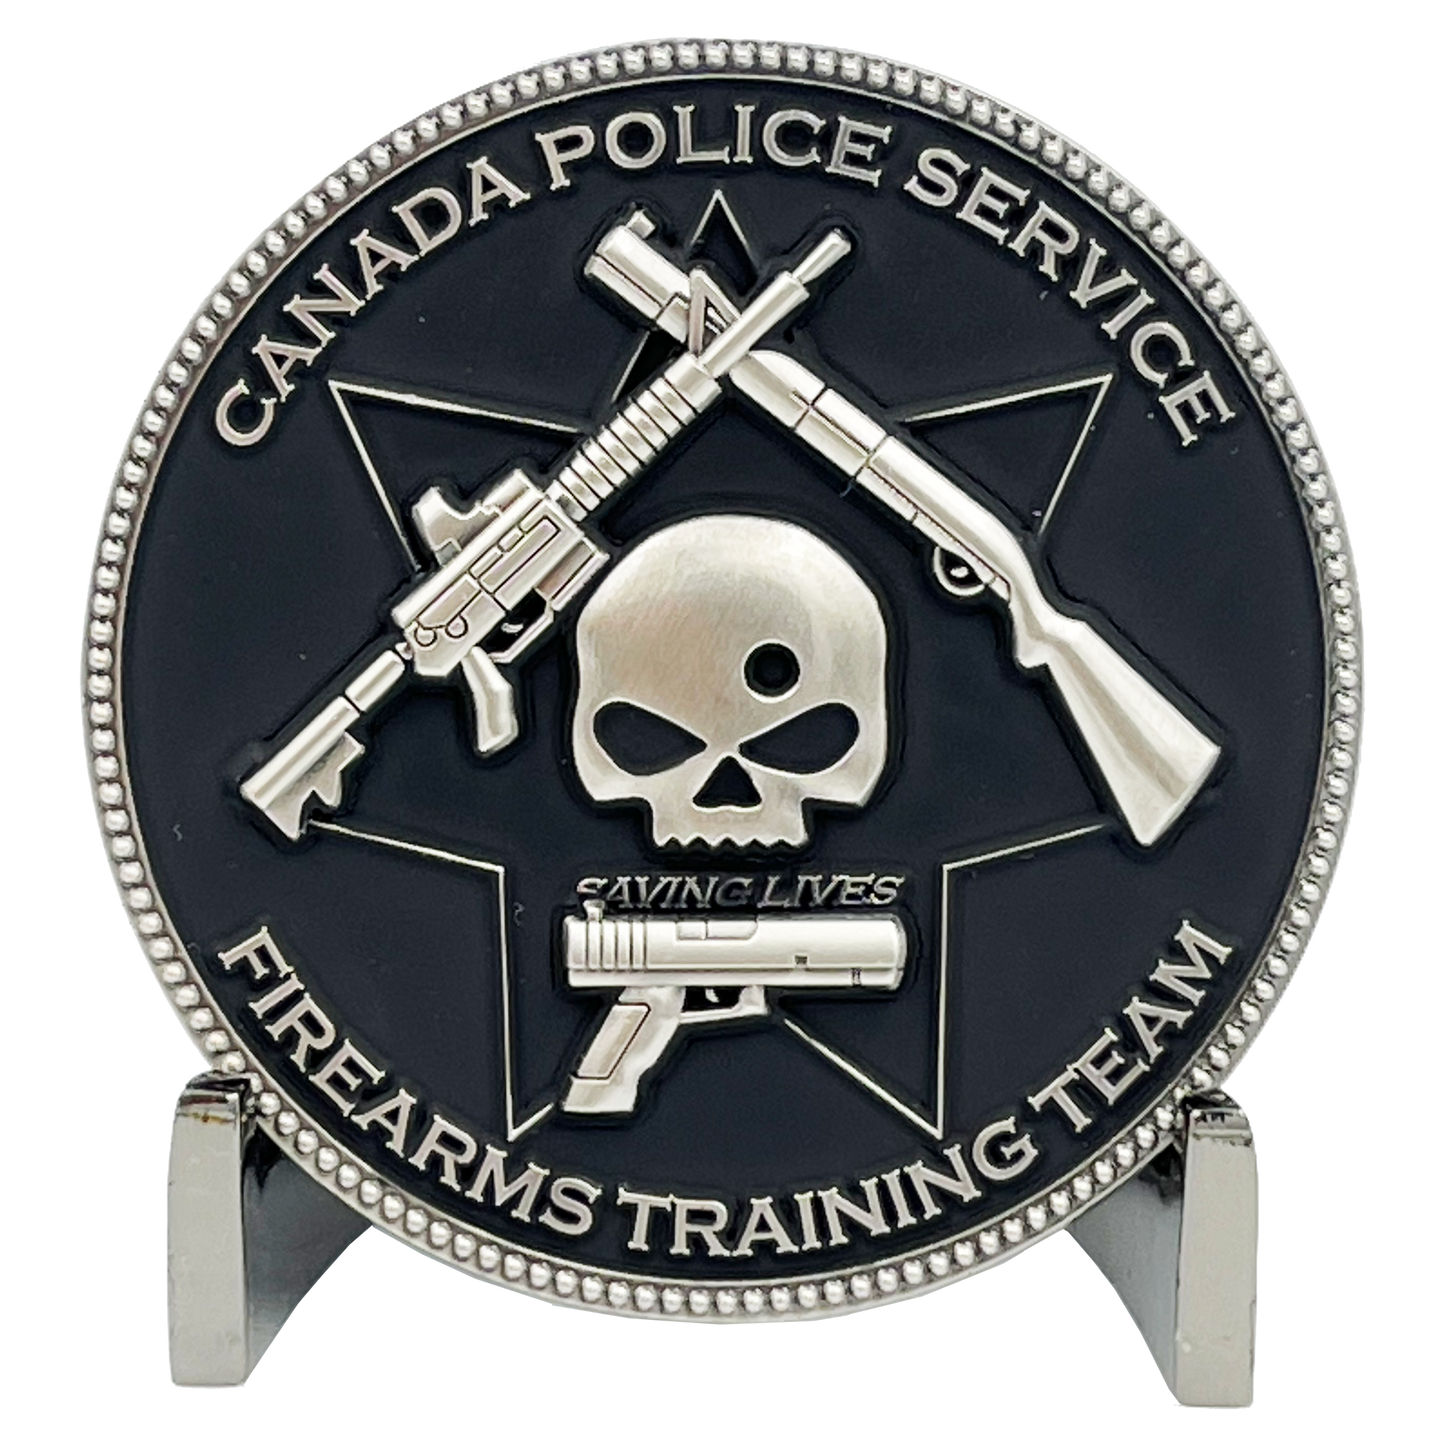 EL6-003 Canada Police Service Calgary Vancouver M4 Shotgun Pistol Toronto Firearms Instructor Challenge Coin